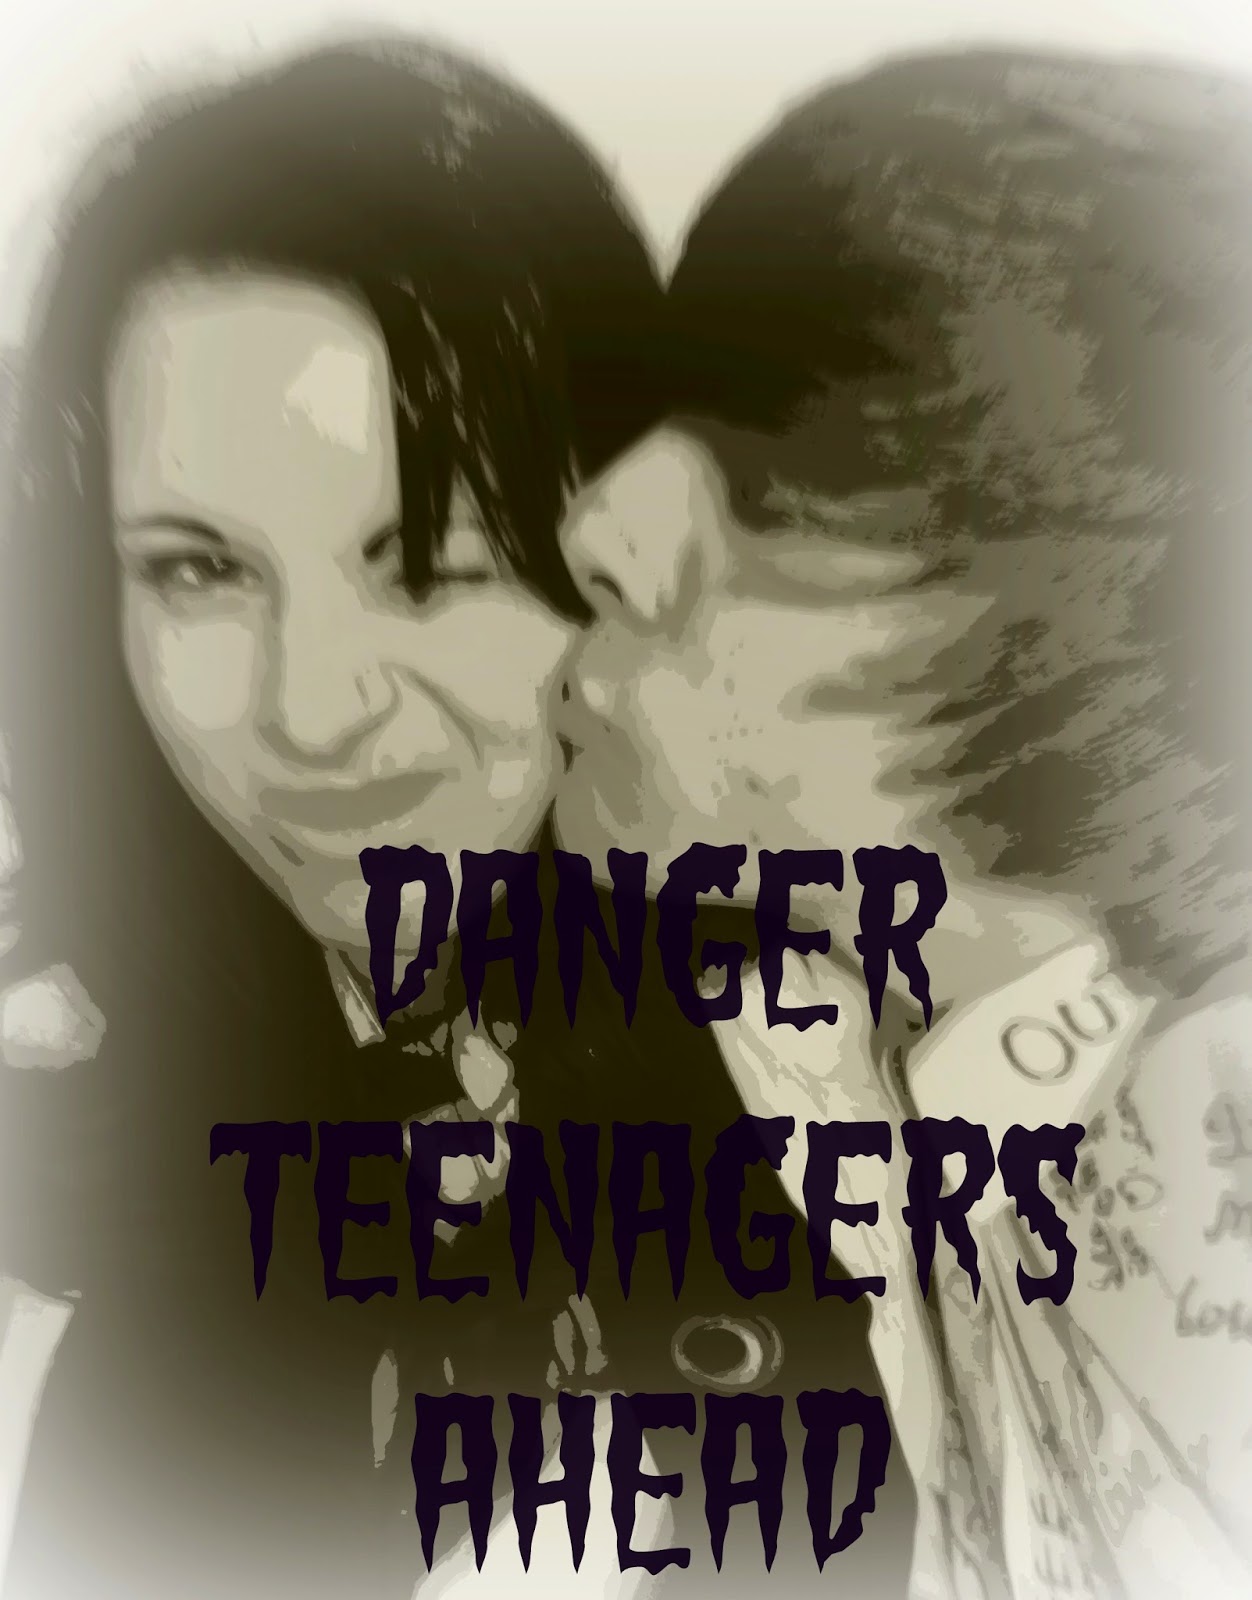 Danger Teenagers Ahead